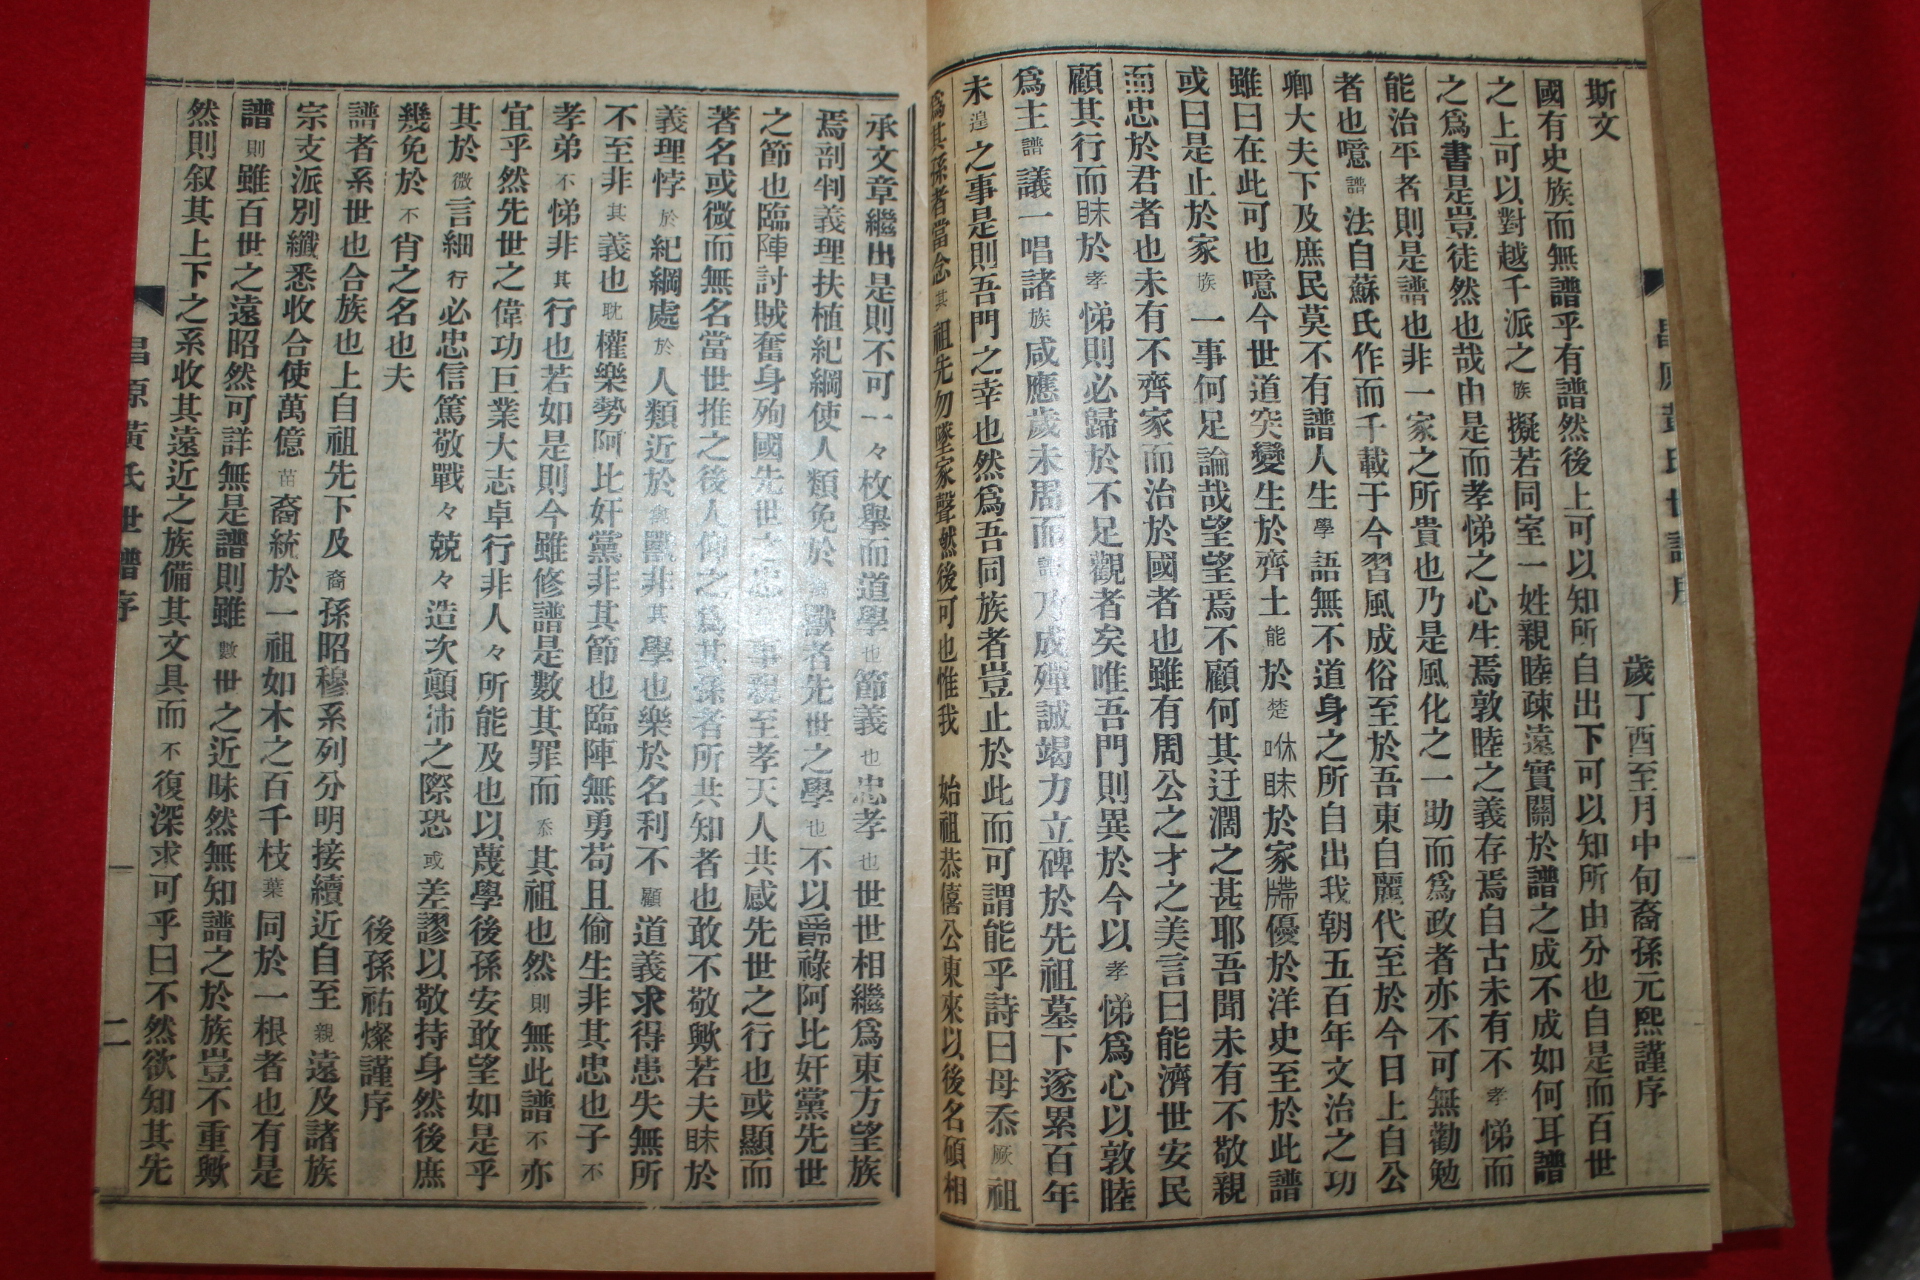 1957년 신연활자본 창원황씨세보(昌原黃氏世譜) 10책완질